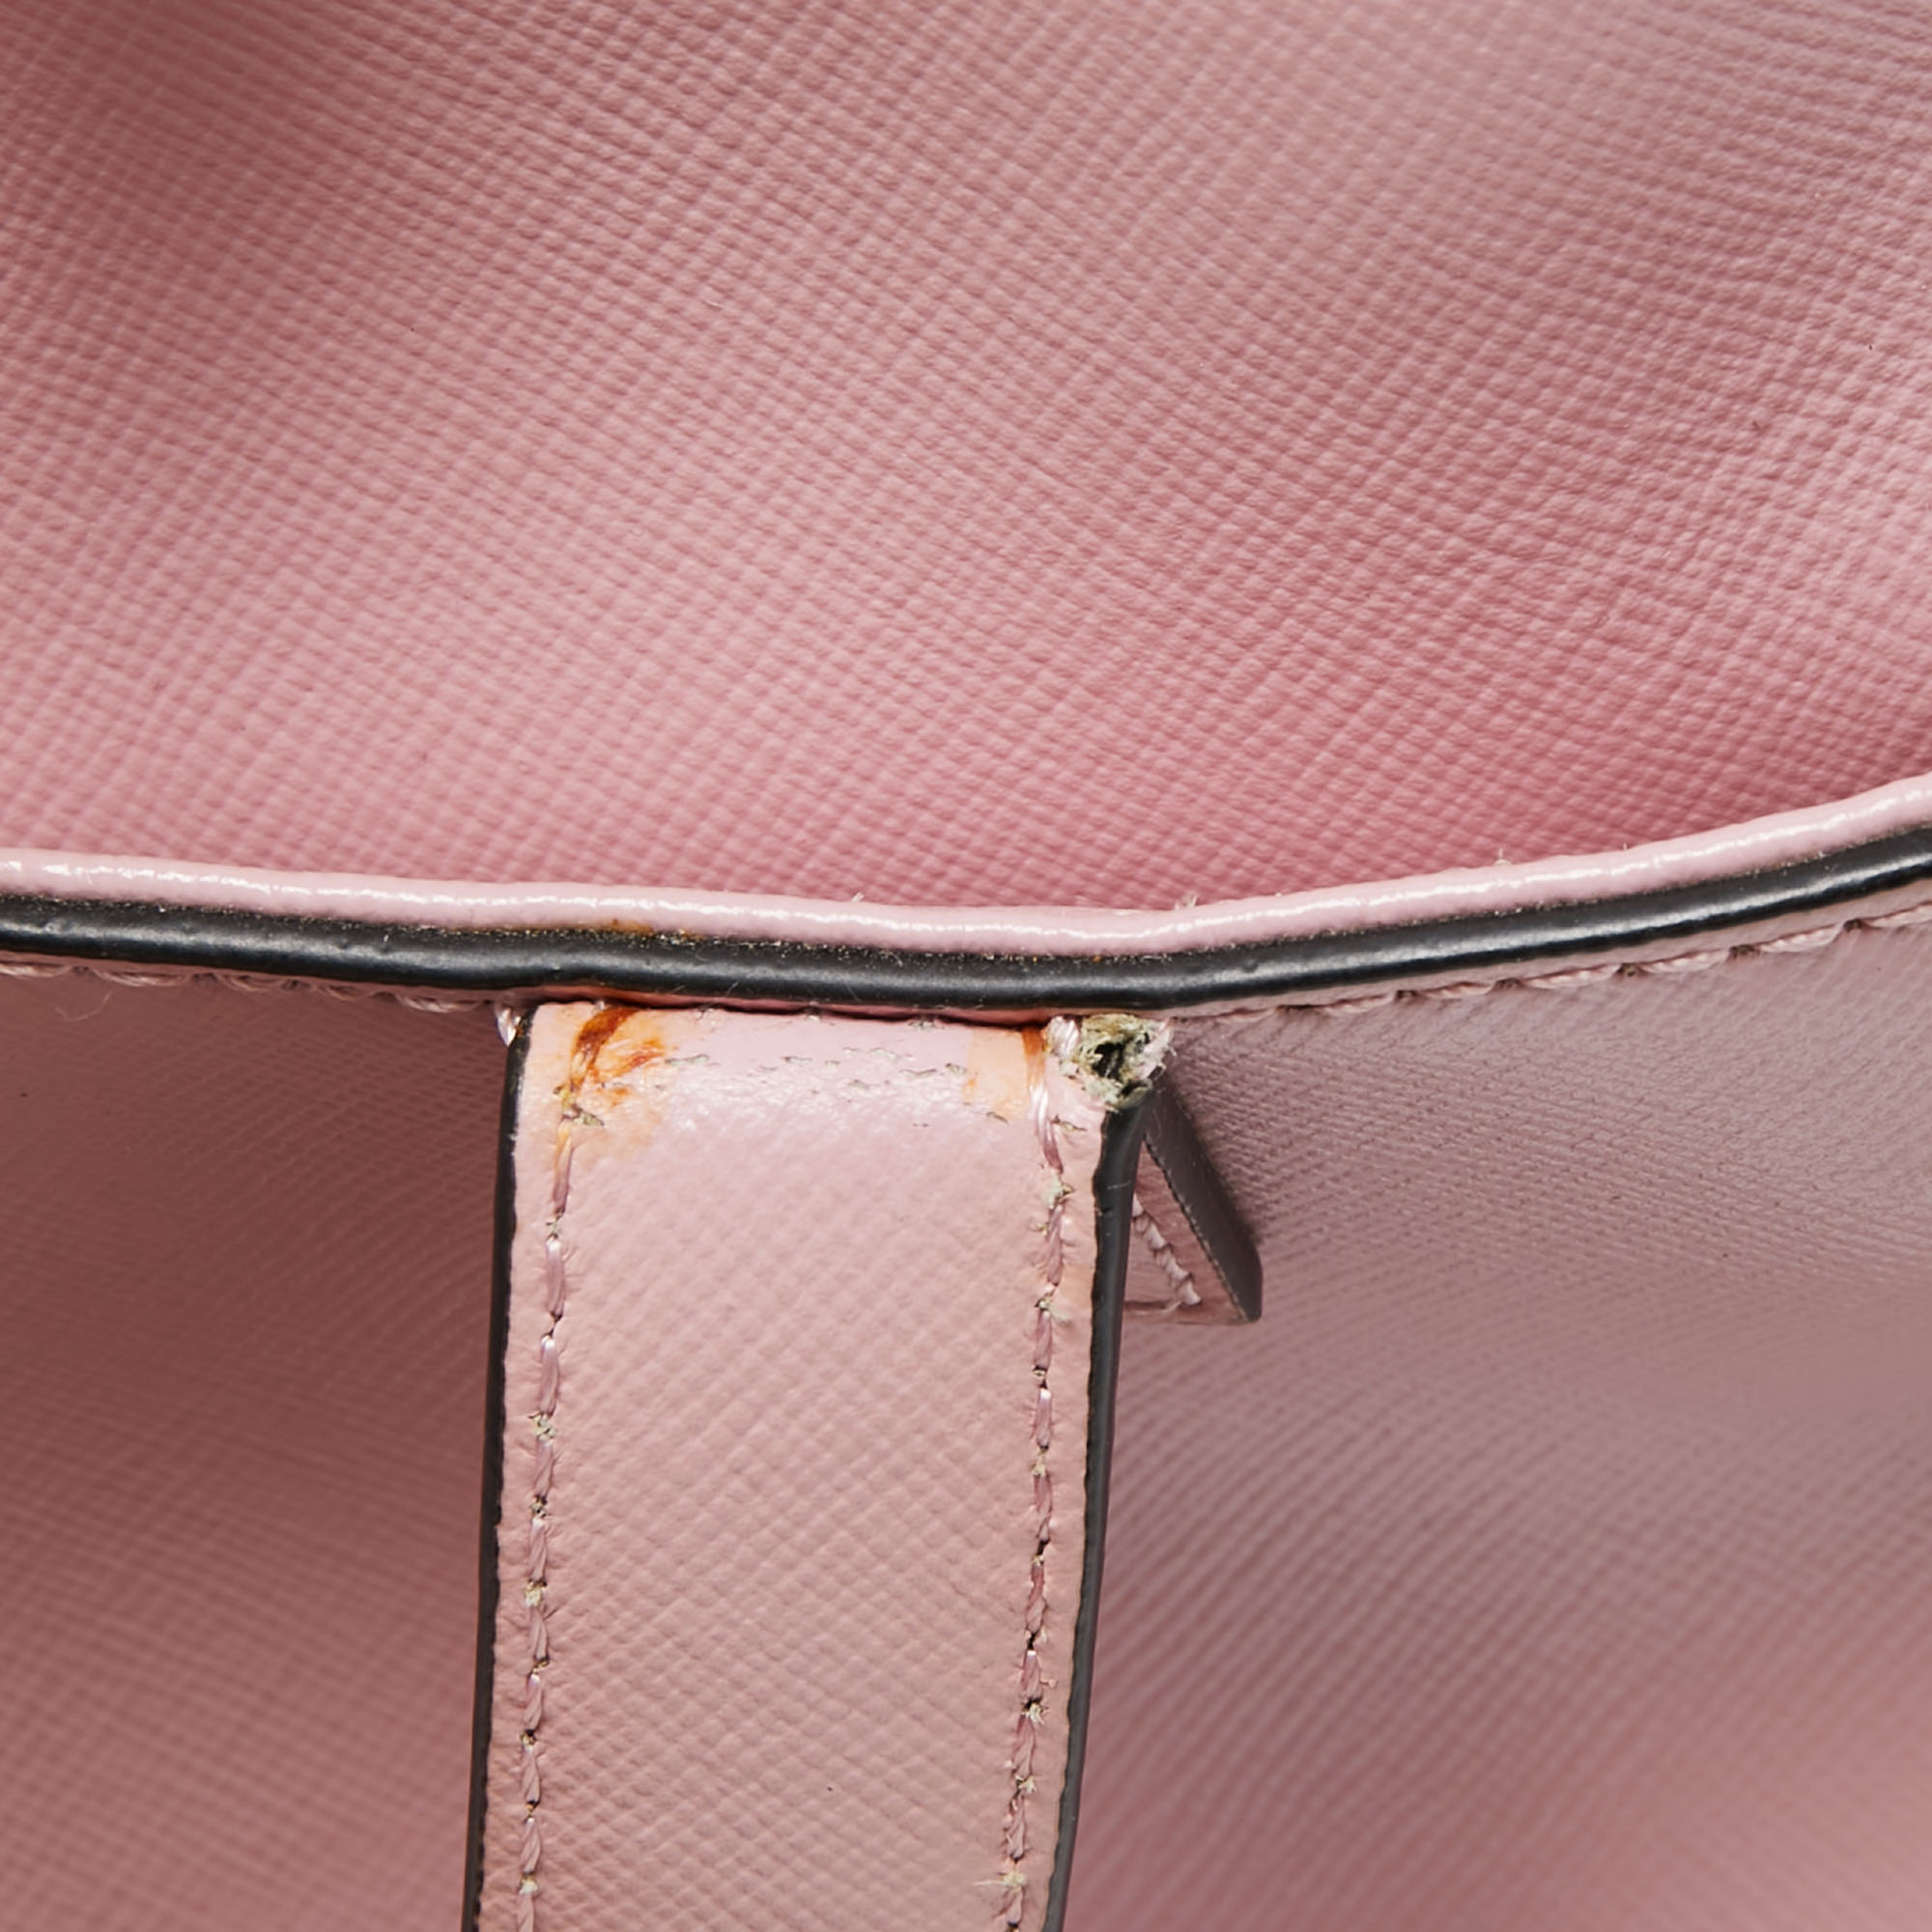 Cerruti Pink Leather Frame Satchel